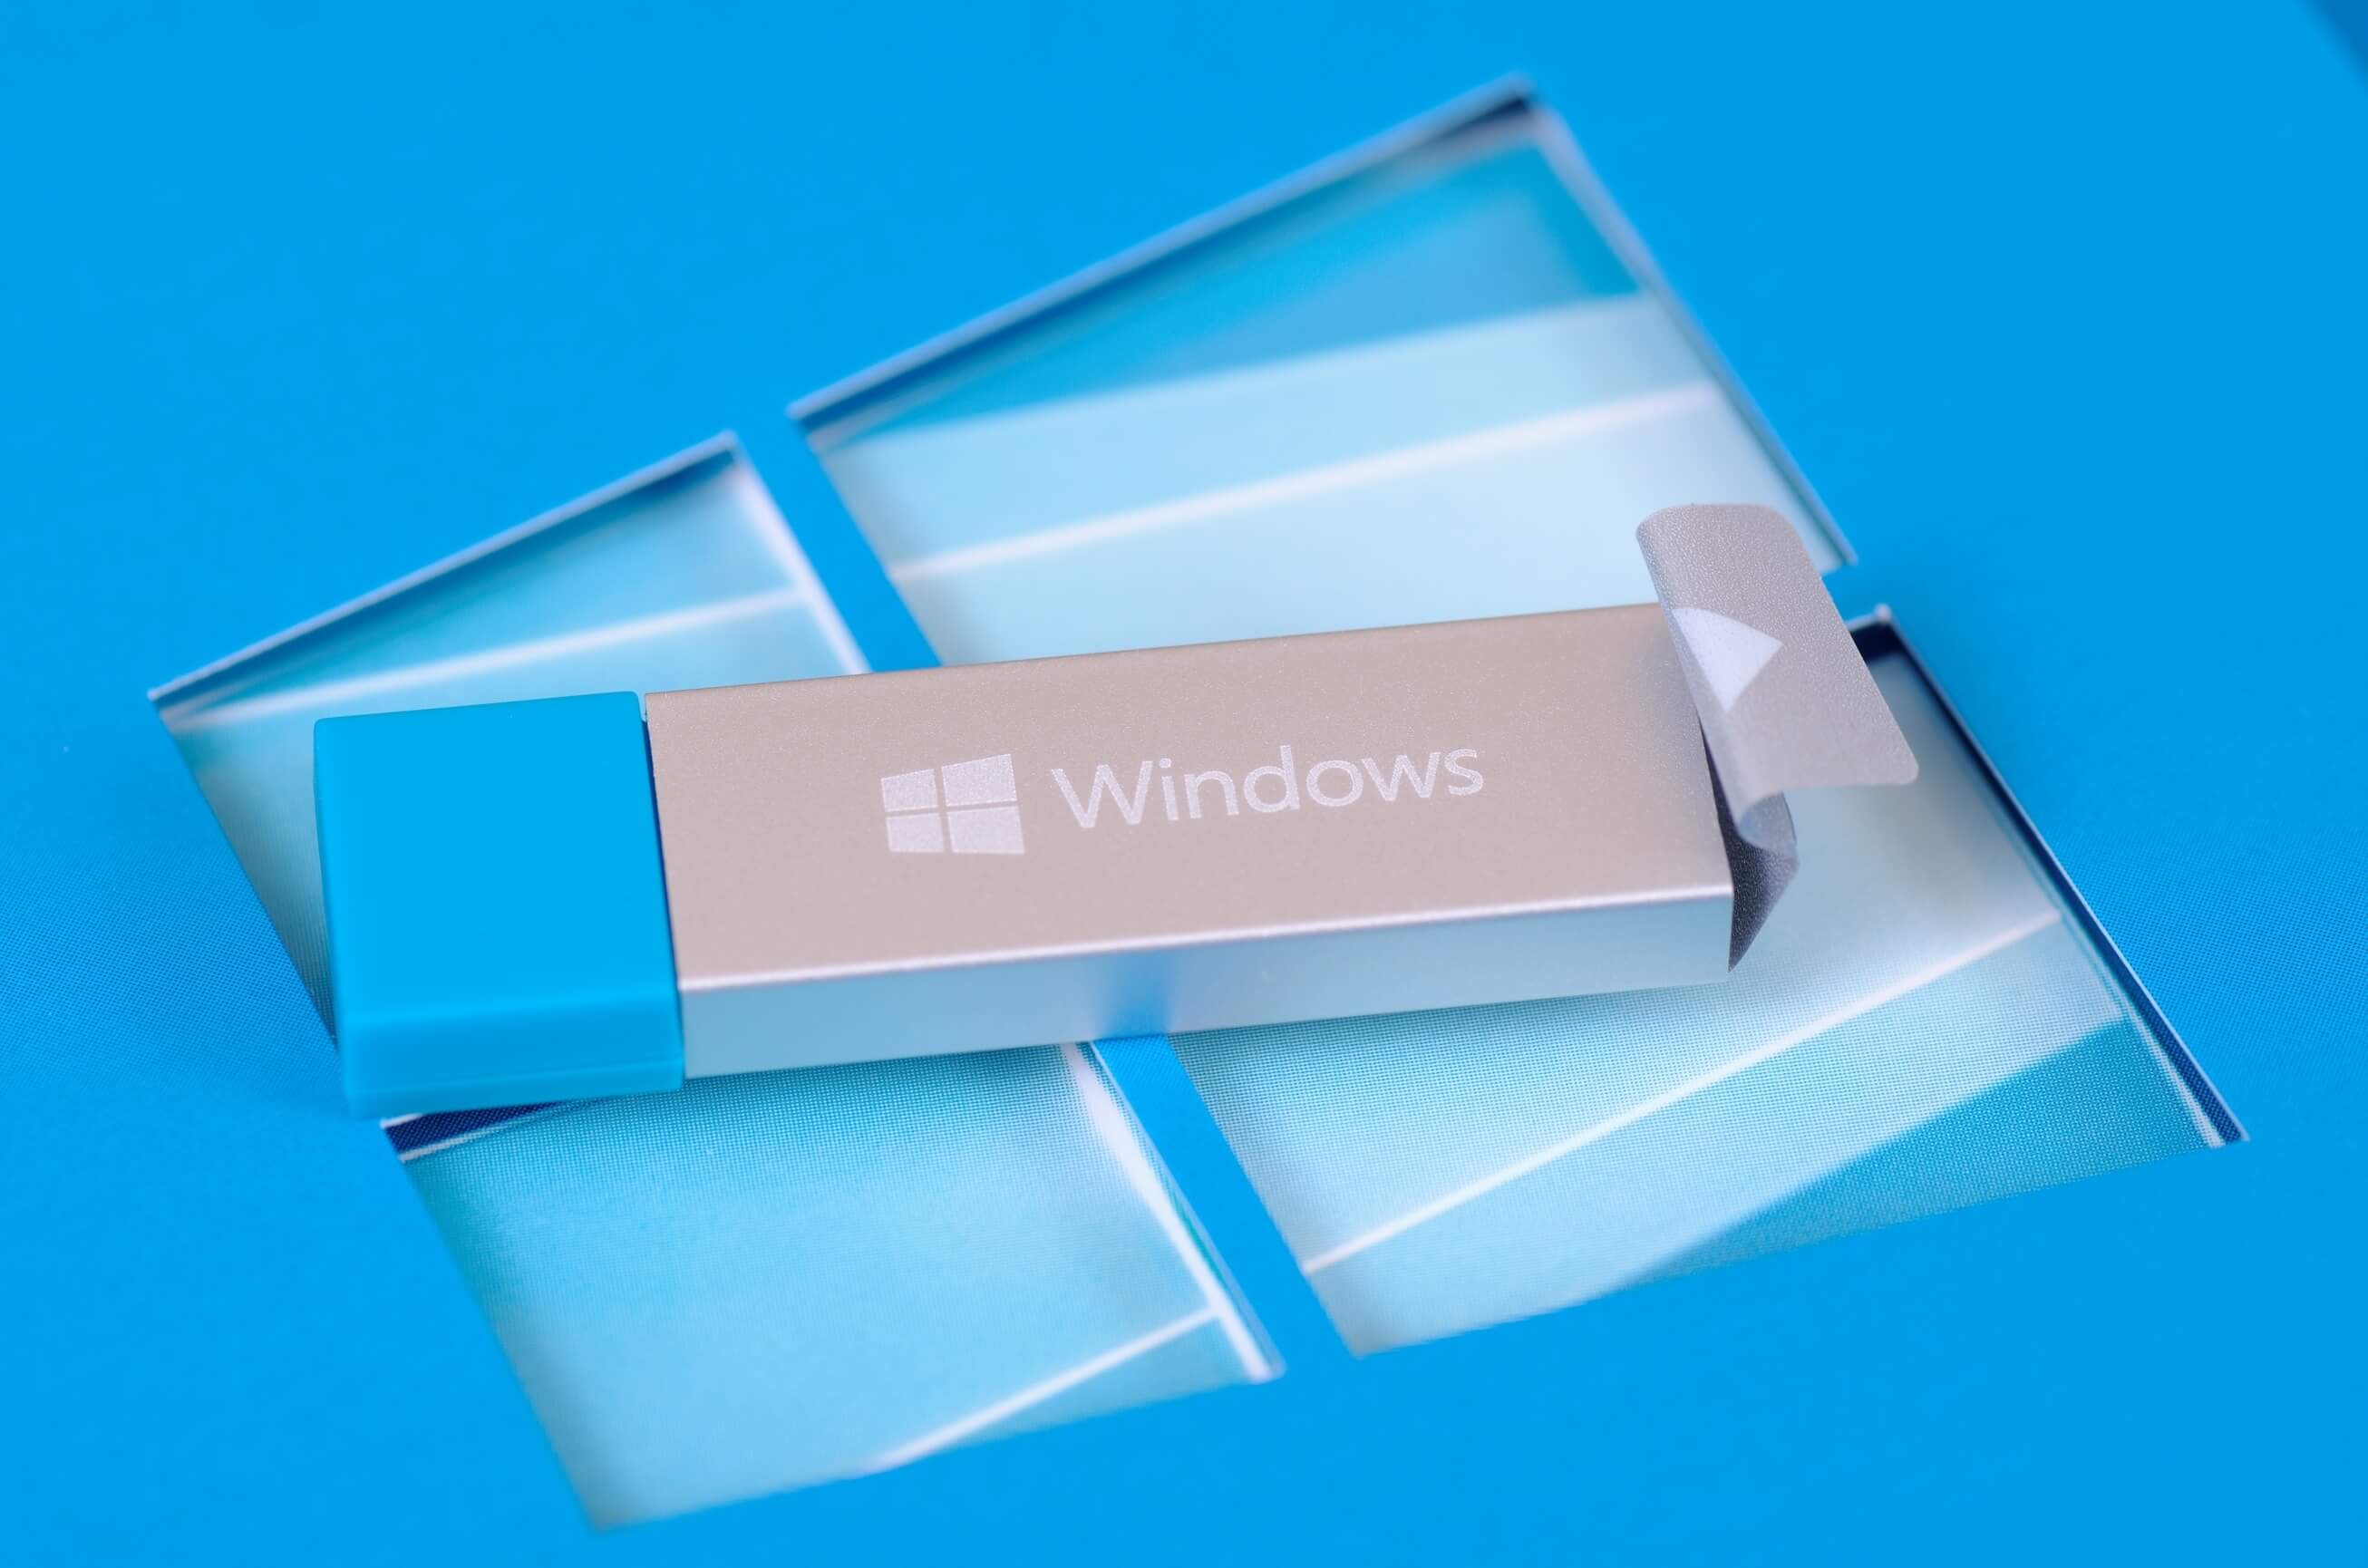 svg+xml,%3Csvg%20xmlns= Windows To Go: Cách cài đặt và chạy Windows 10 từ ổ USB